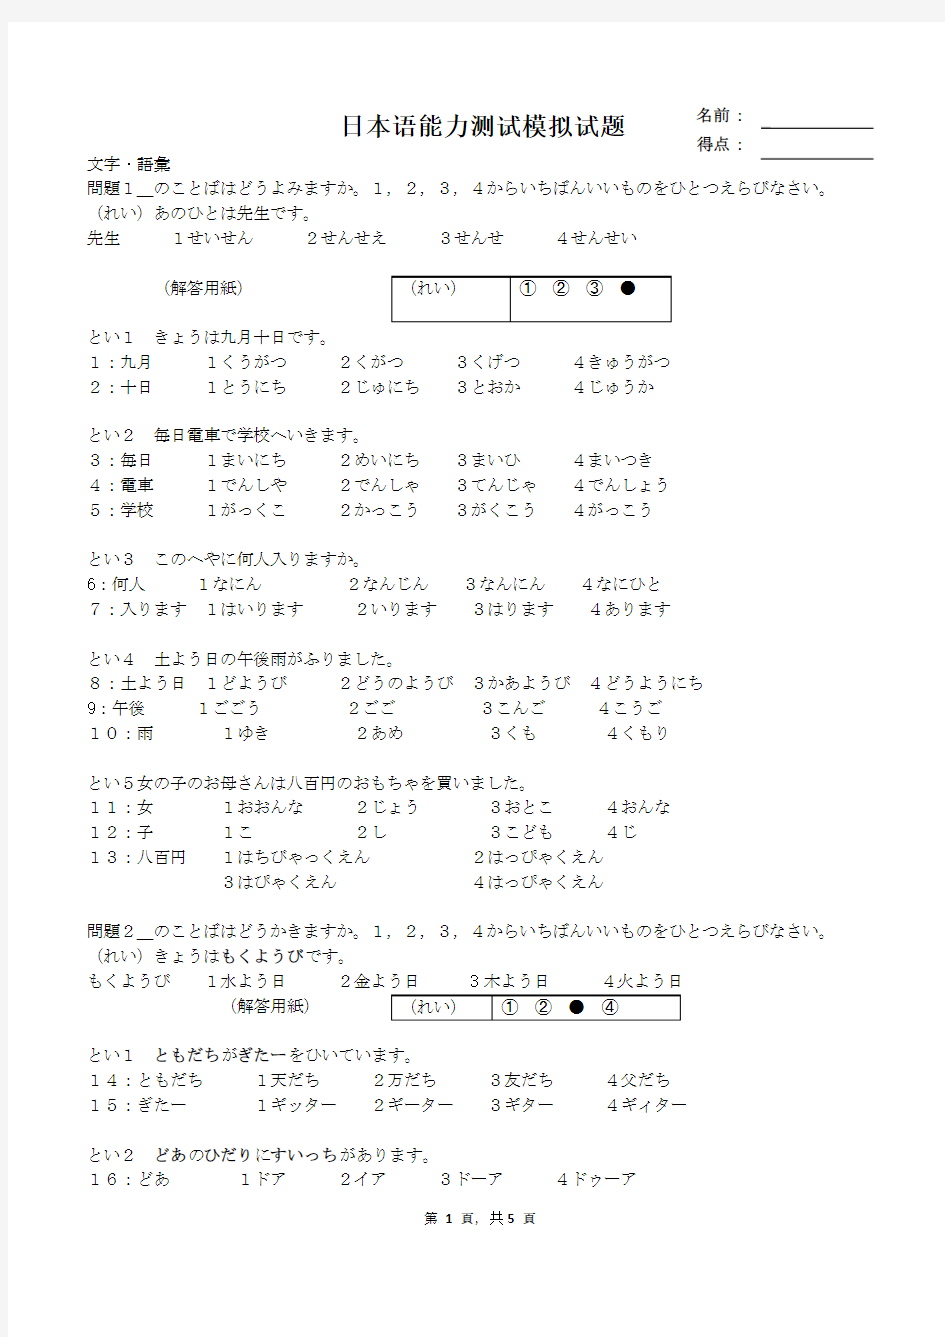 新版初级日本语能力测试模拟试题